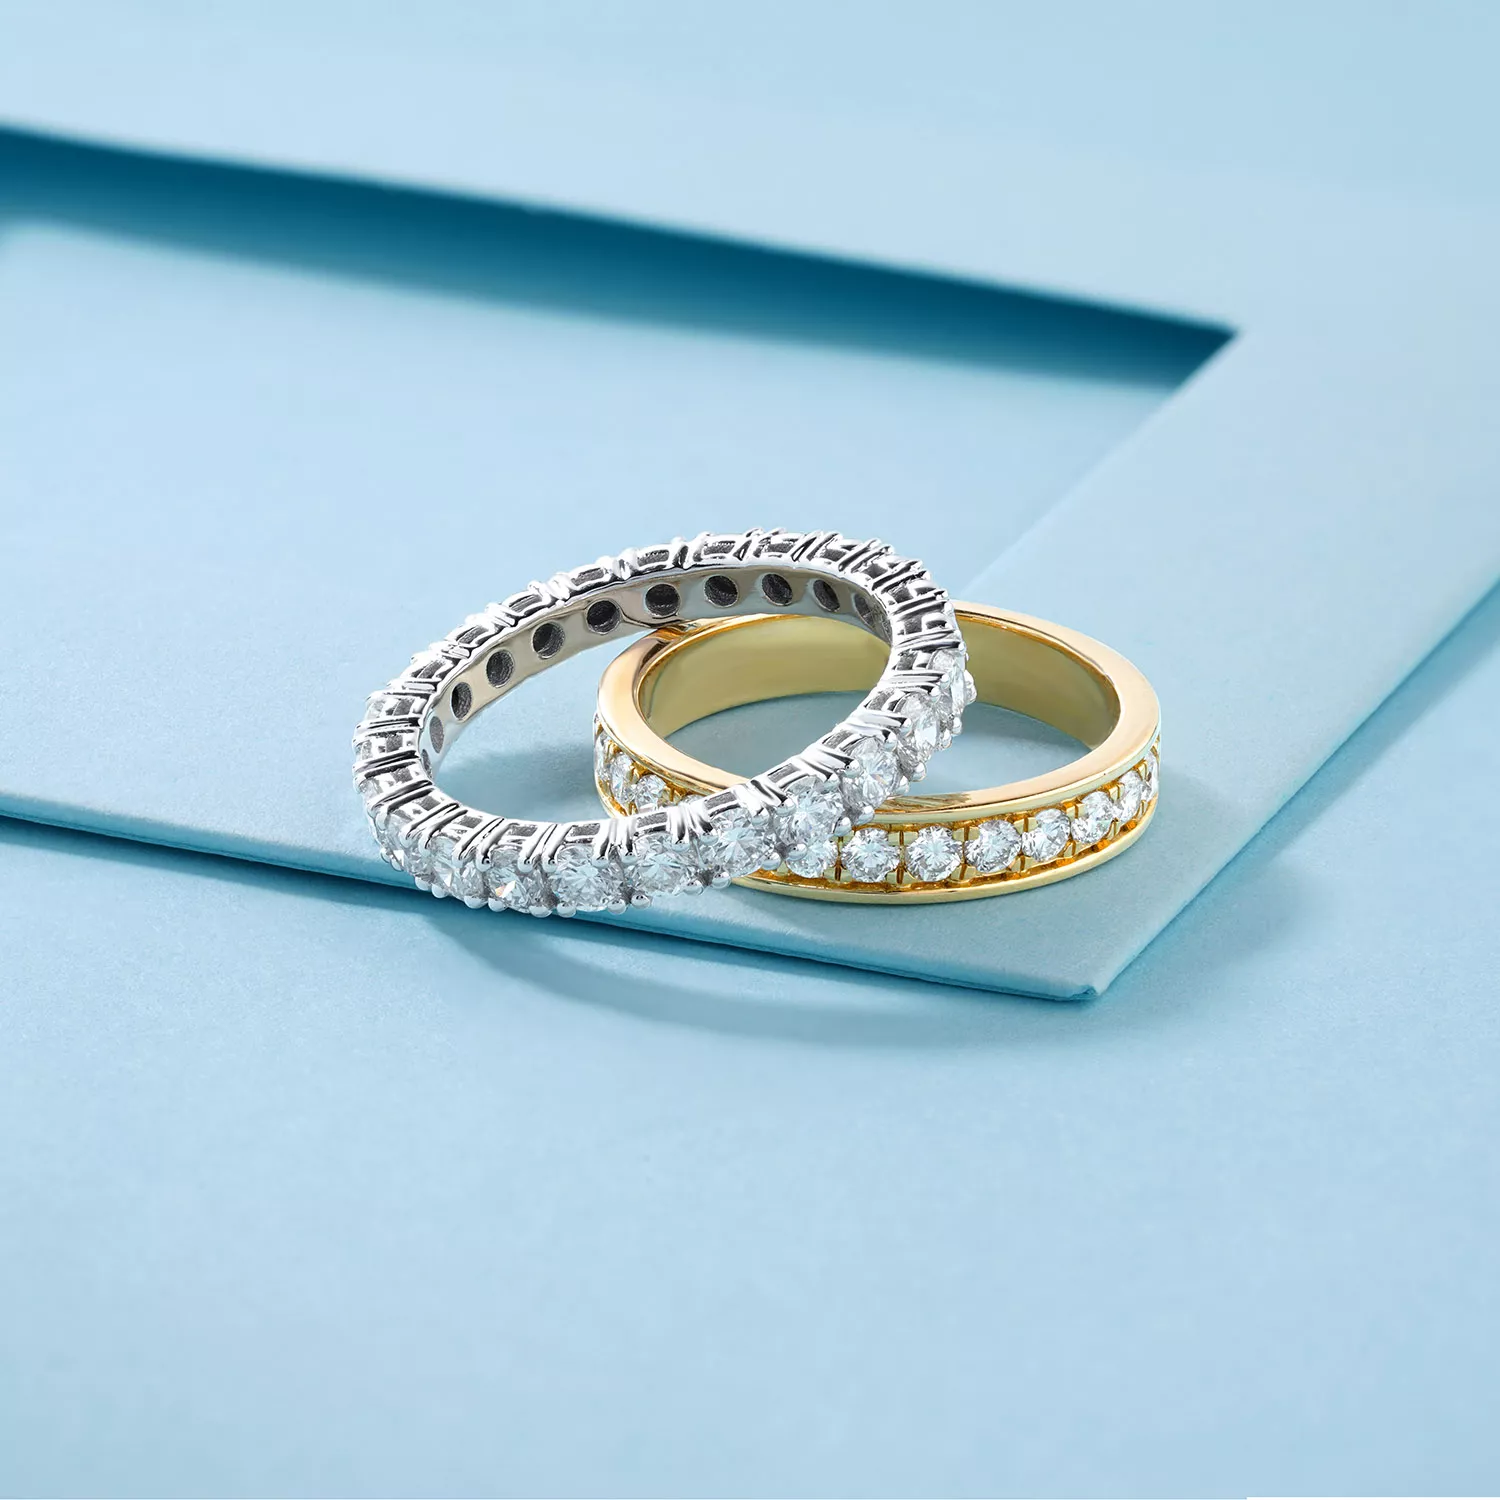 永恆戒指是許多人指定的鑽石戒指款式之一。